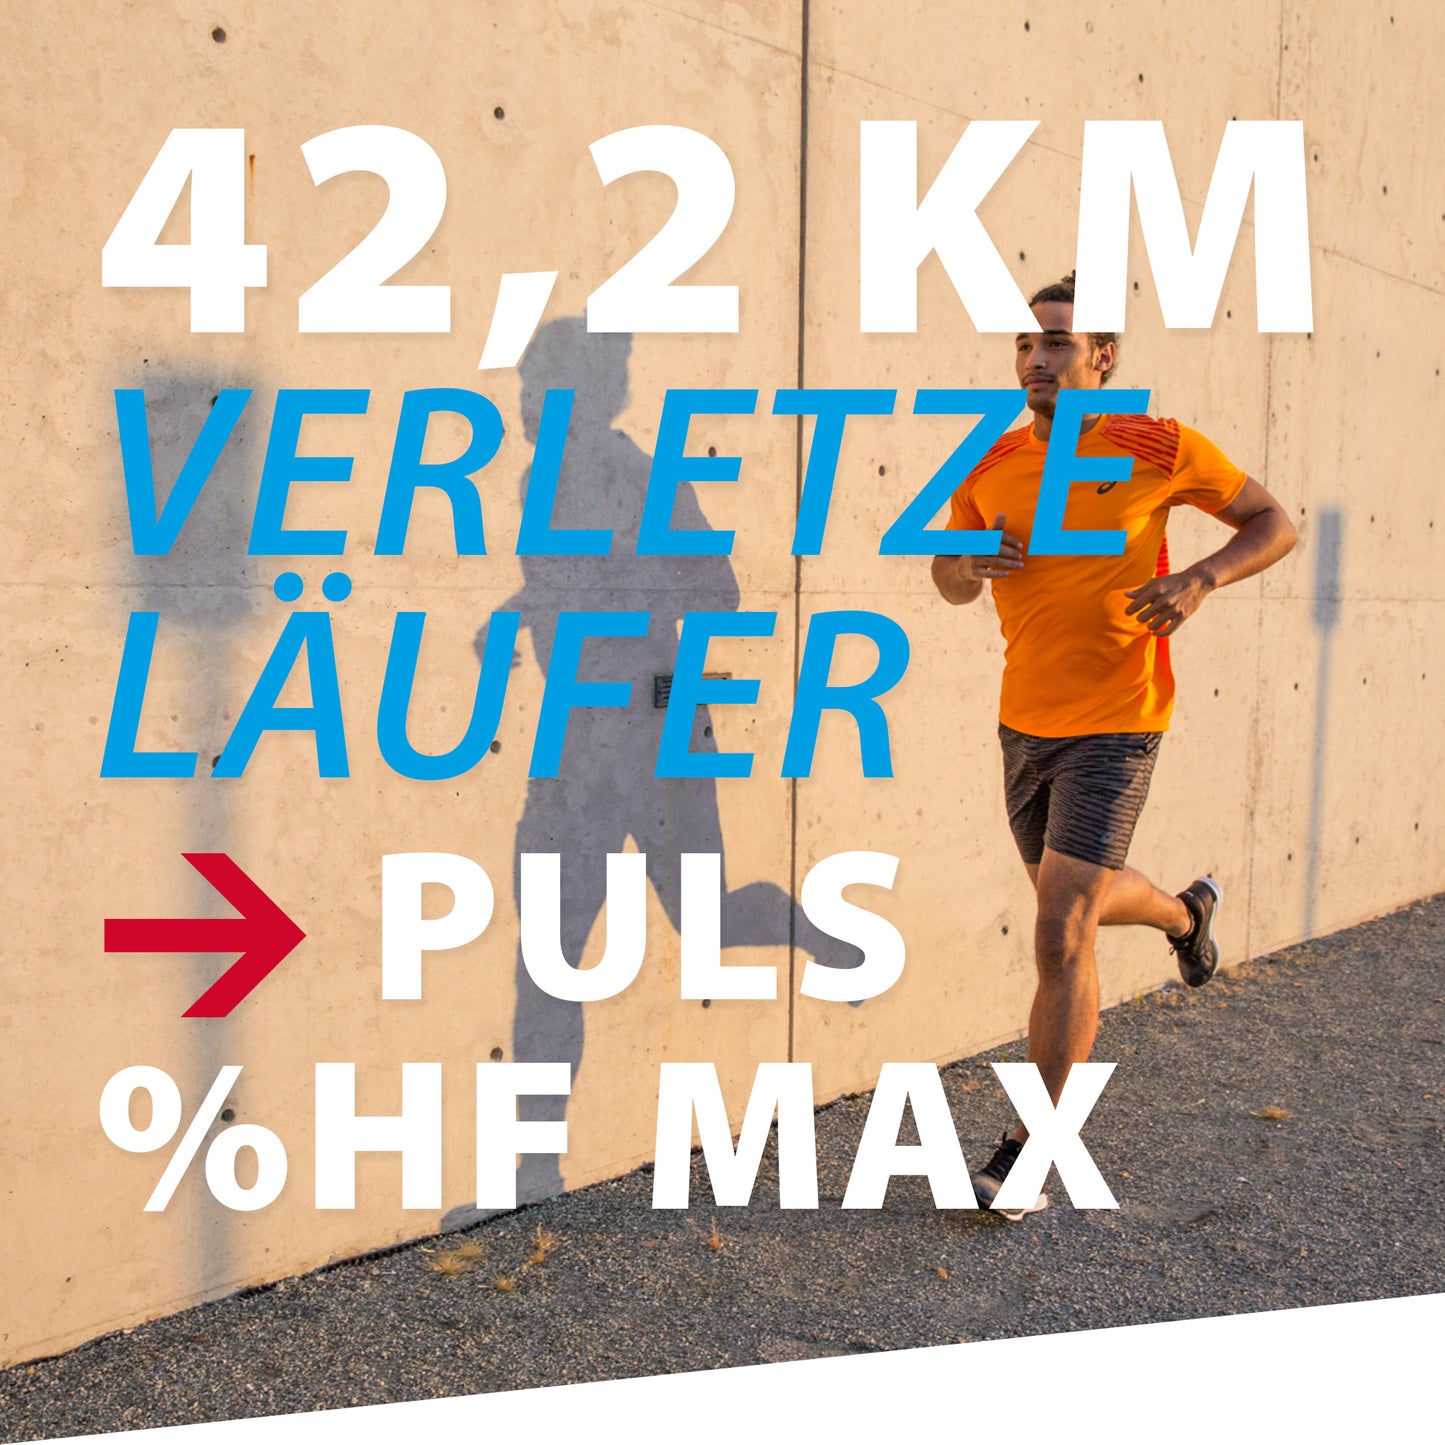 TRAININGSPLAN: 42,2 km | Verletzungsanfällige Läufer | Puls (%HFmax)